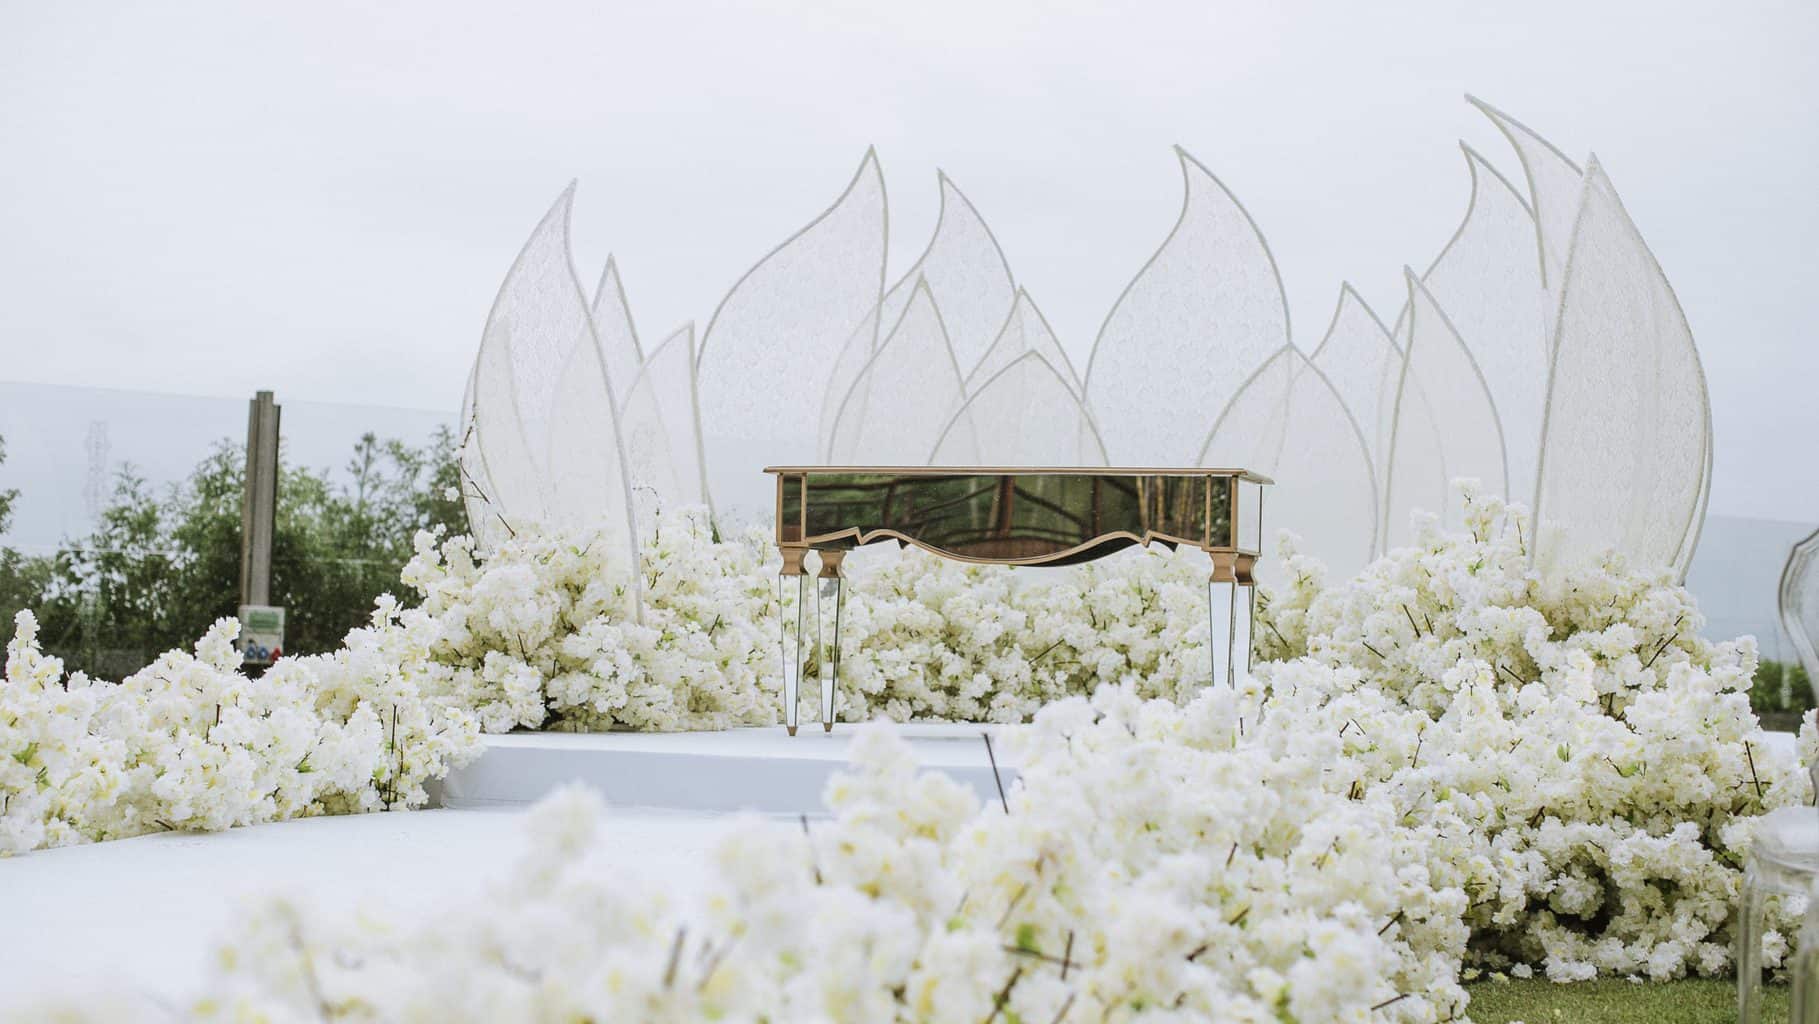 cerimonia-de-casamento-Isadora-e-Lucas-Estaleiro-Guest-House-The-Alms-Brand-Fotografia-0126-scaled